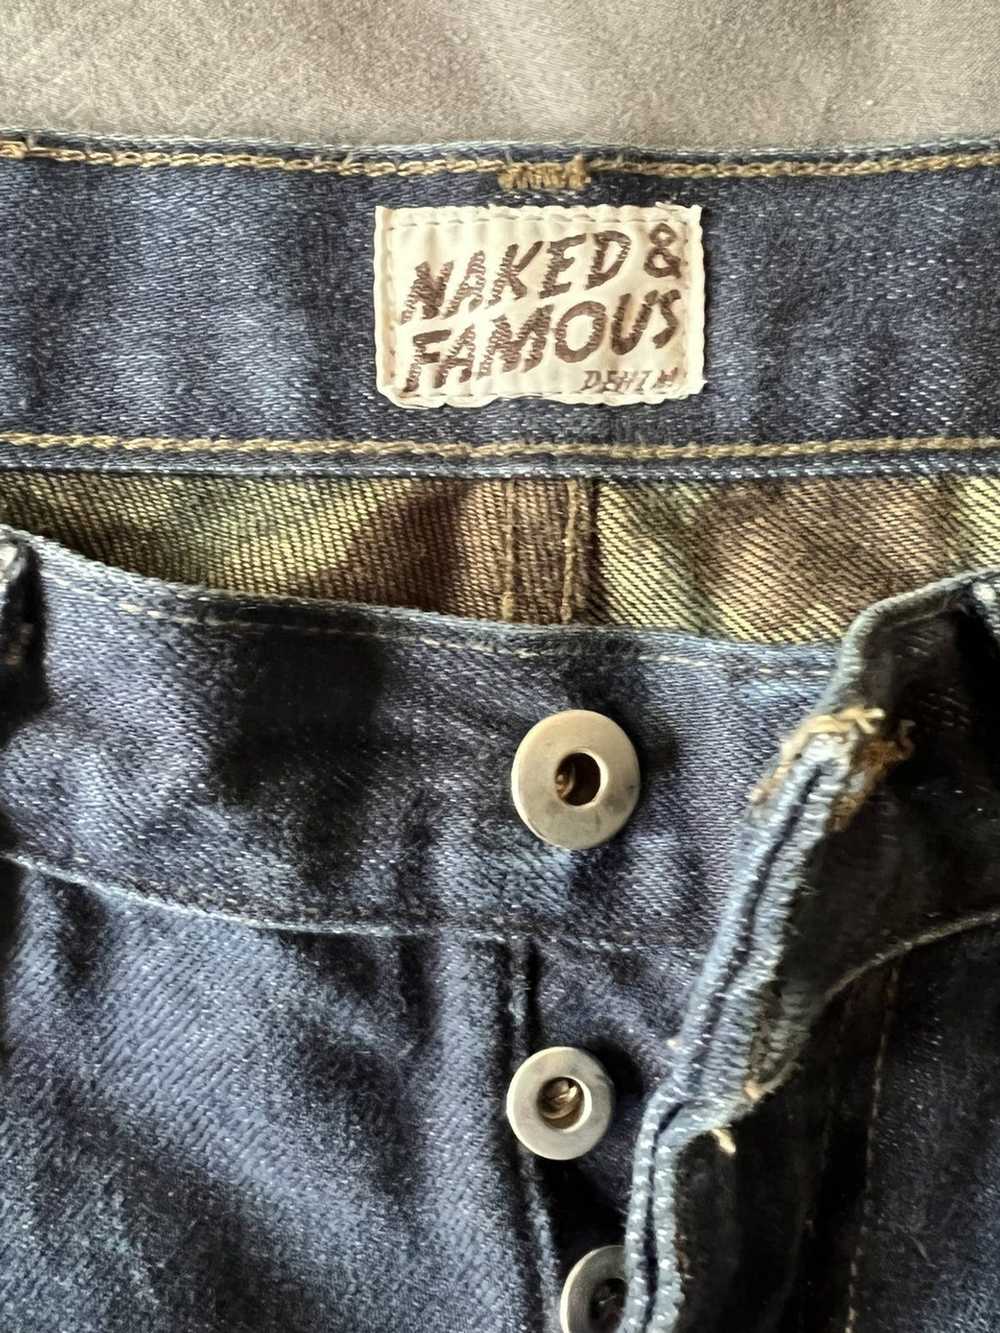 Naked & Famous NAKED & FAMOUS - image 4